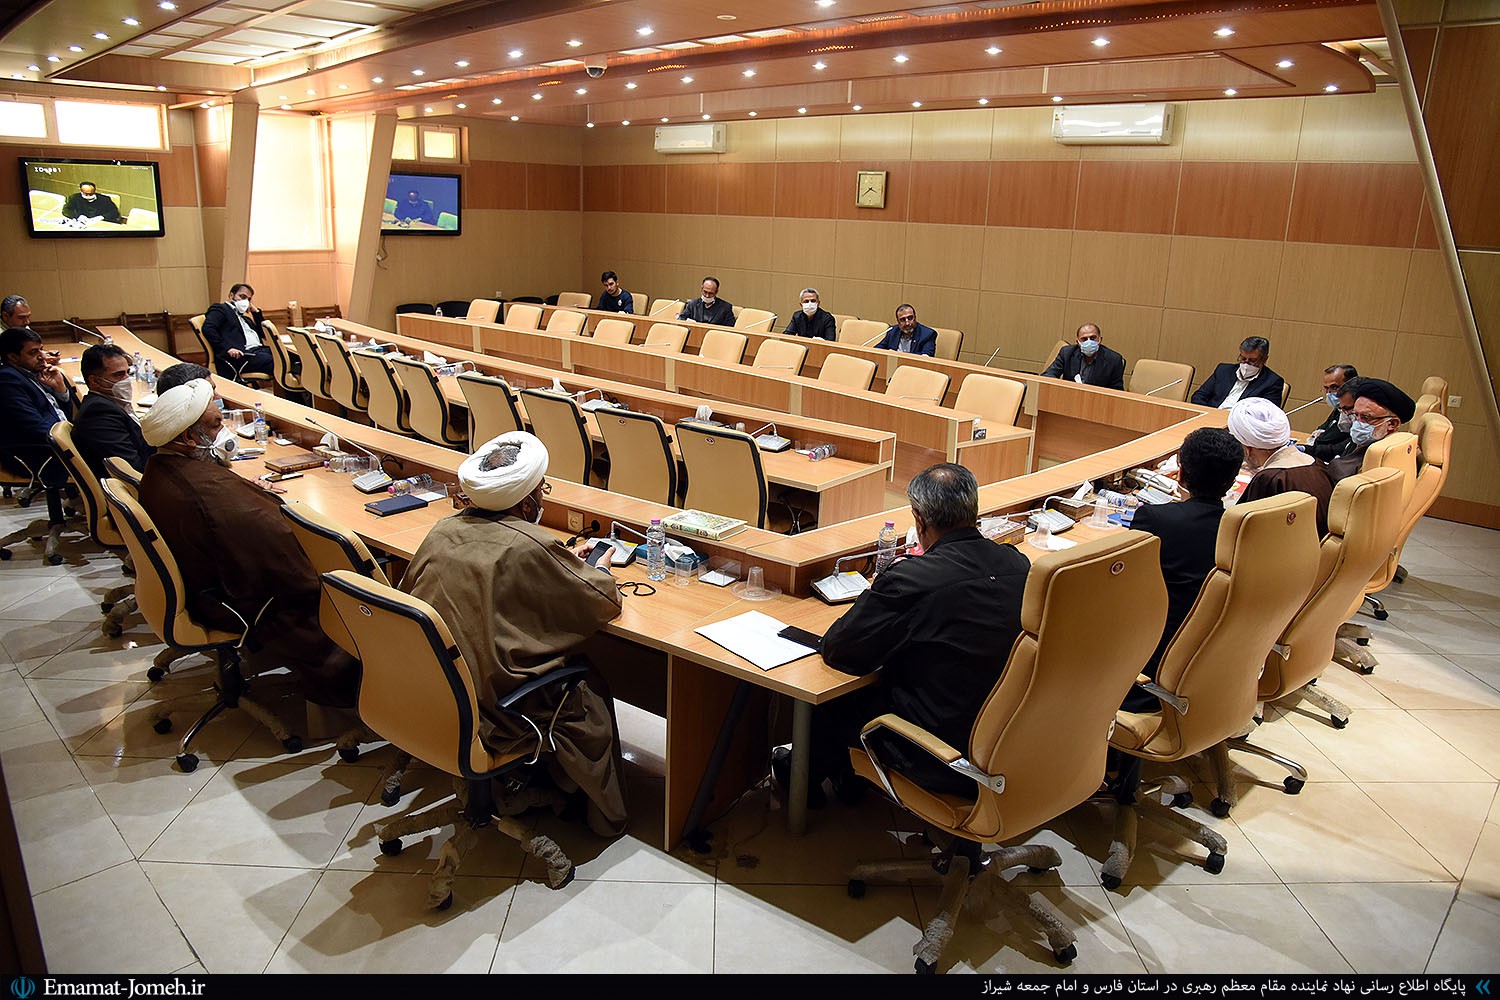 دومین جلسه شورای مشورتی قرارگاه همدلی استان فارس در بحران کرونا با حضور آیت الله دژکام